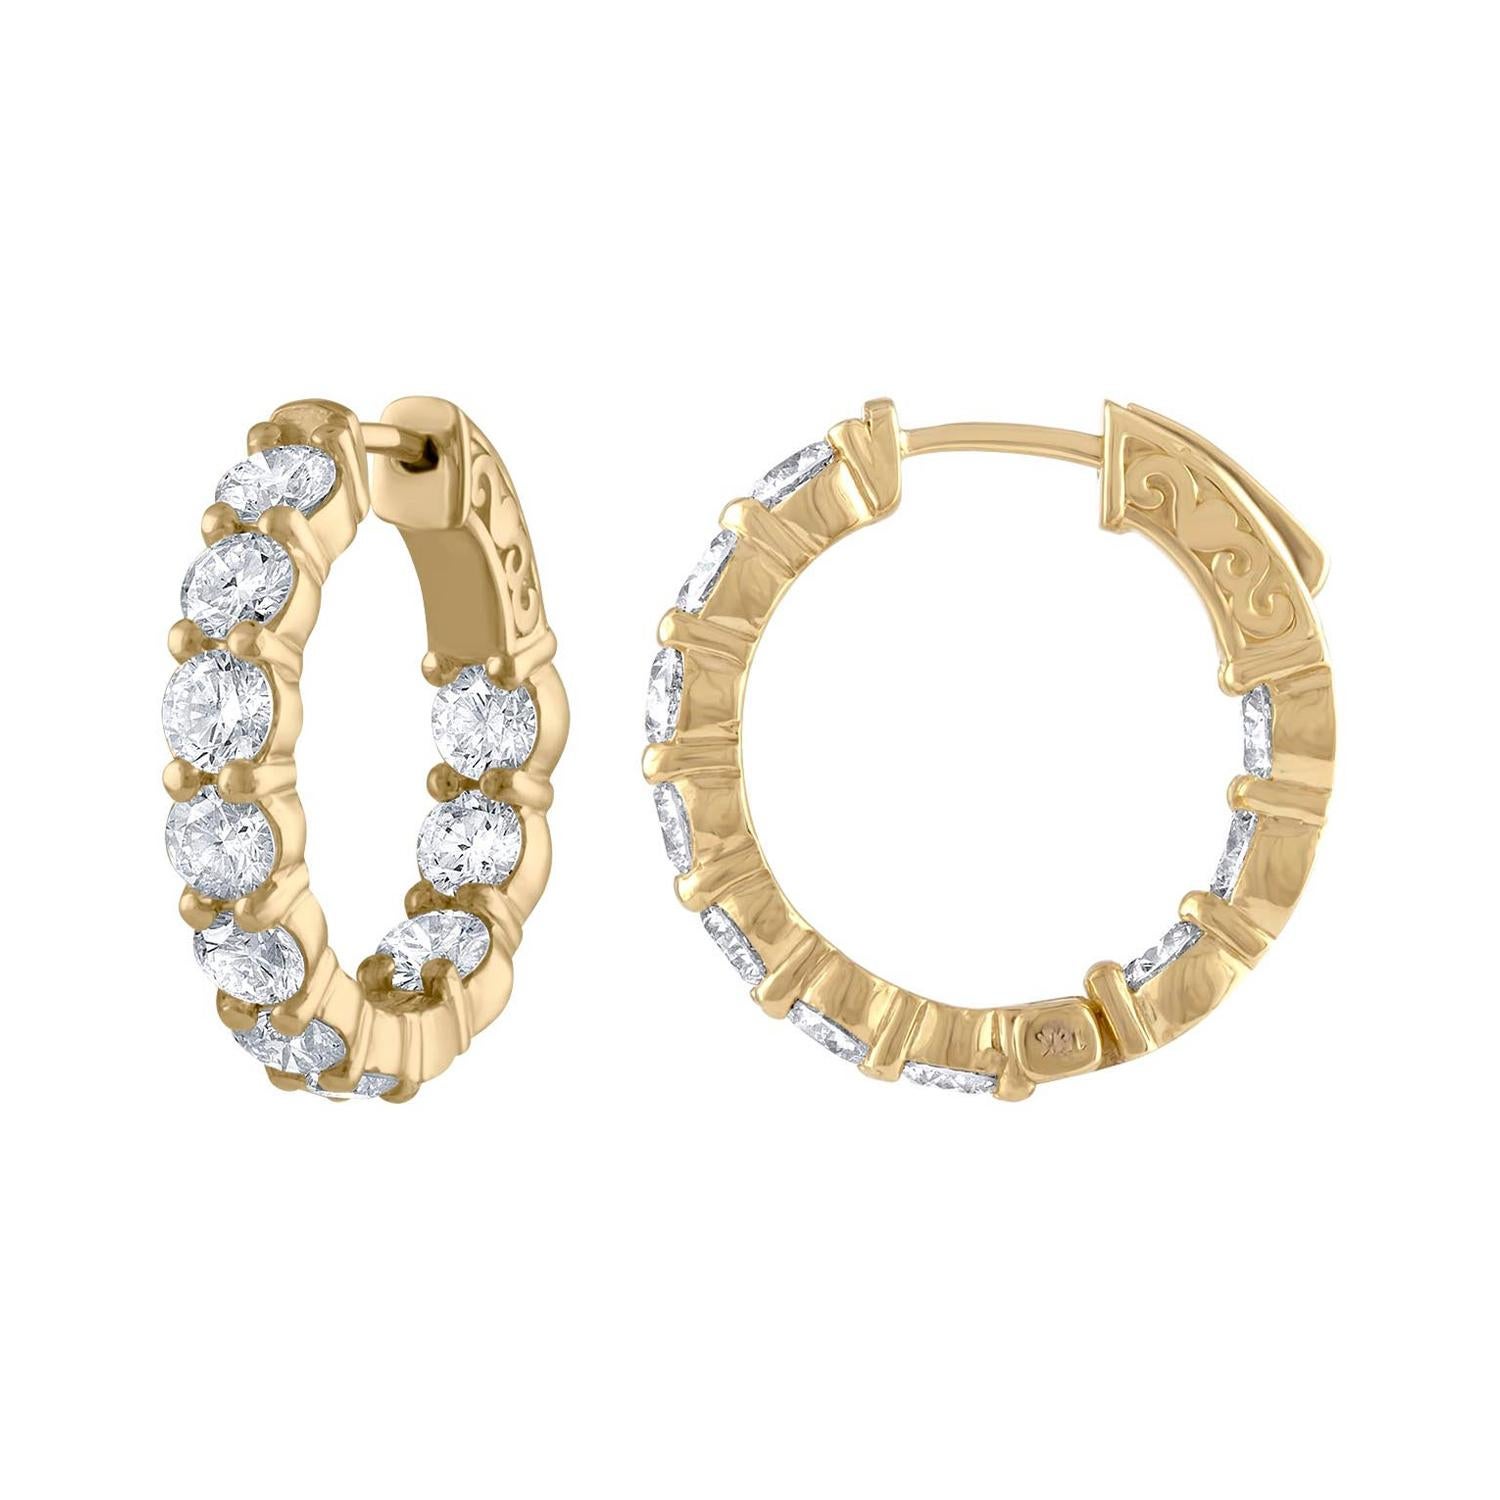 Diana M. Fine Jewelry 18k 4.10 Ct. tw. Diamond Hoop Earrings For Sale